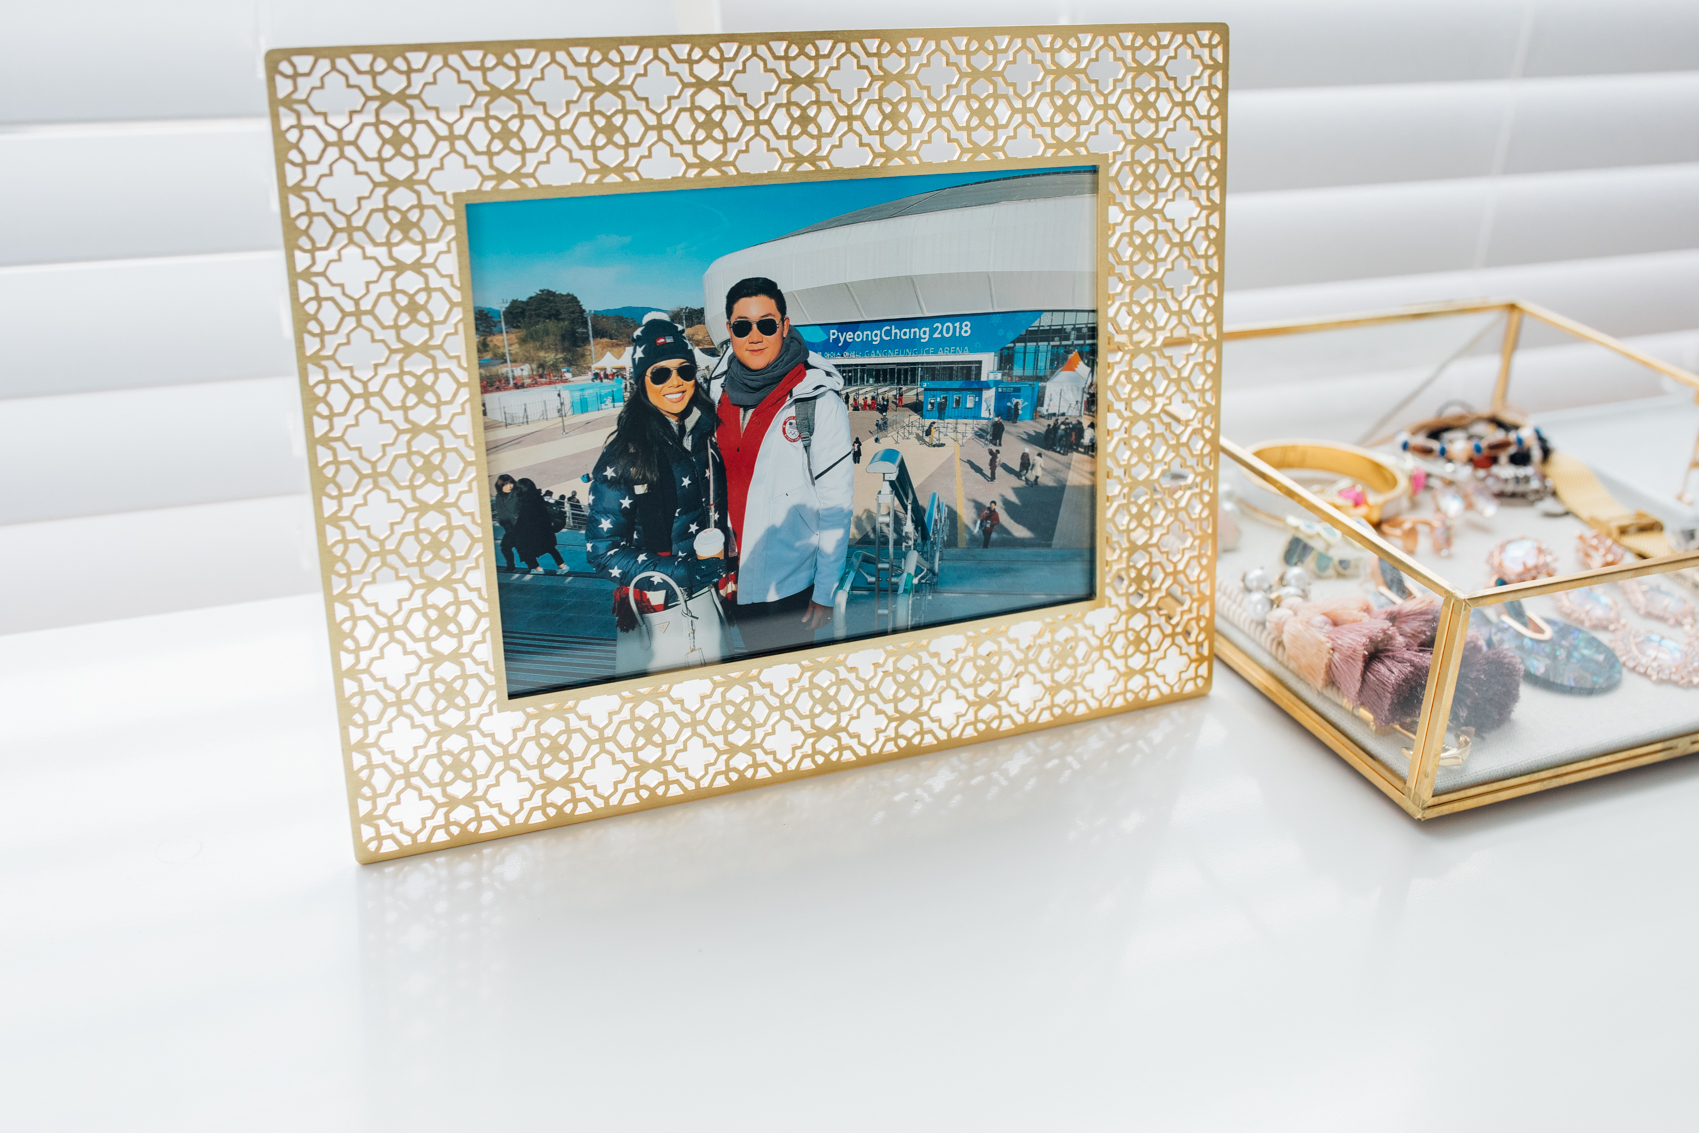 Blogger Hoang-Kim shares her dresser decor featuring a Kendra Scott frame